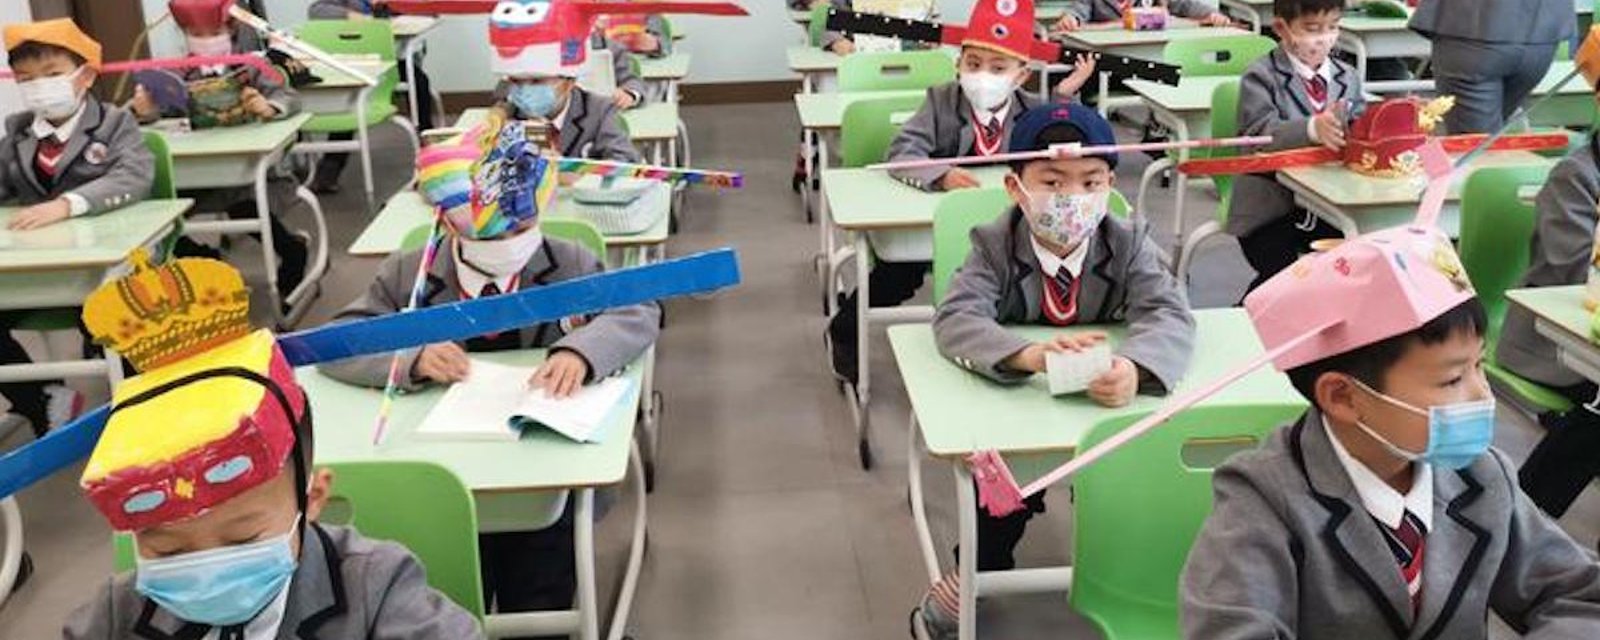 Déconfinement: des enfants chinois retournent à l’école en portant des chapeaux de distanciation sociale